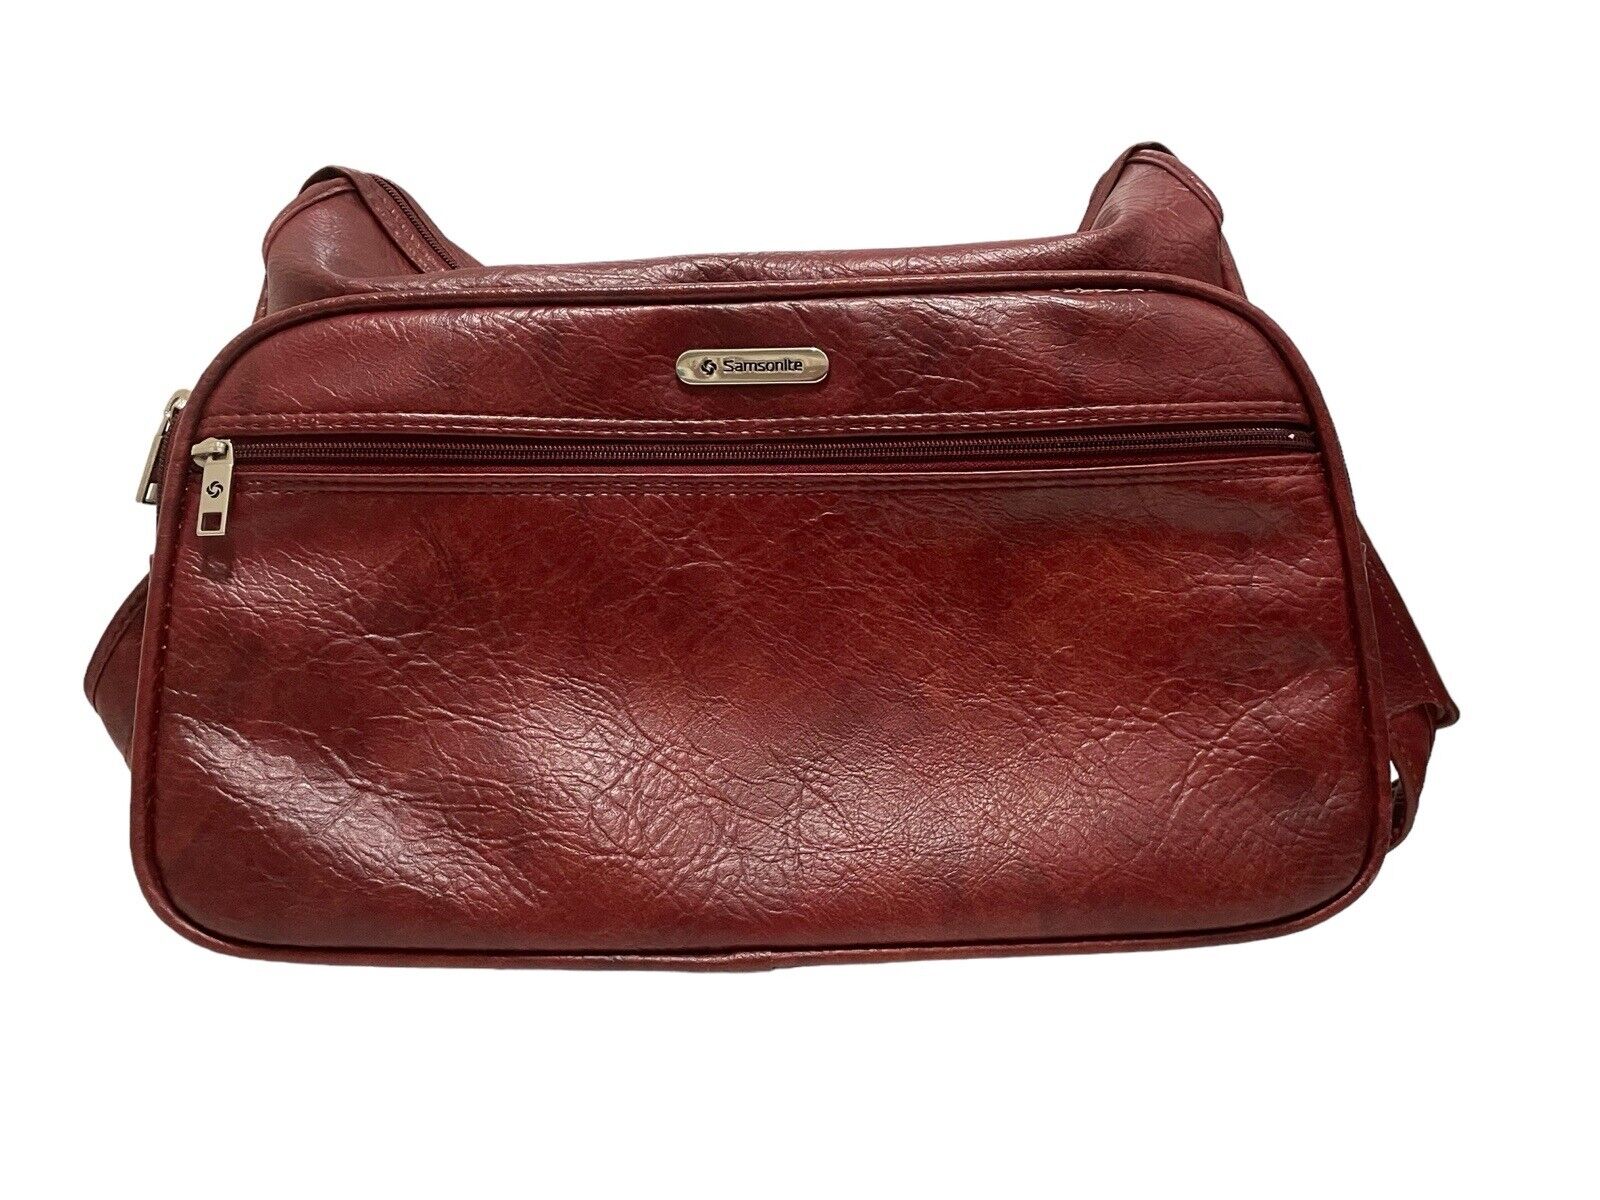 VTG Samsonite Silhouette Red Leather Messenger Laptop Travel Bag W/ Strap